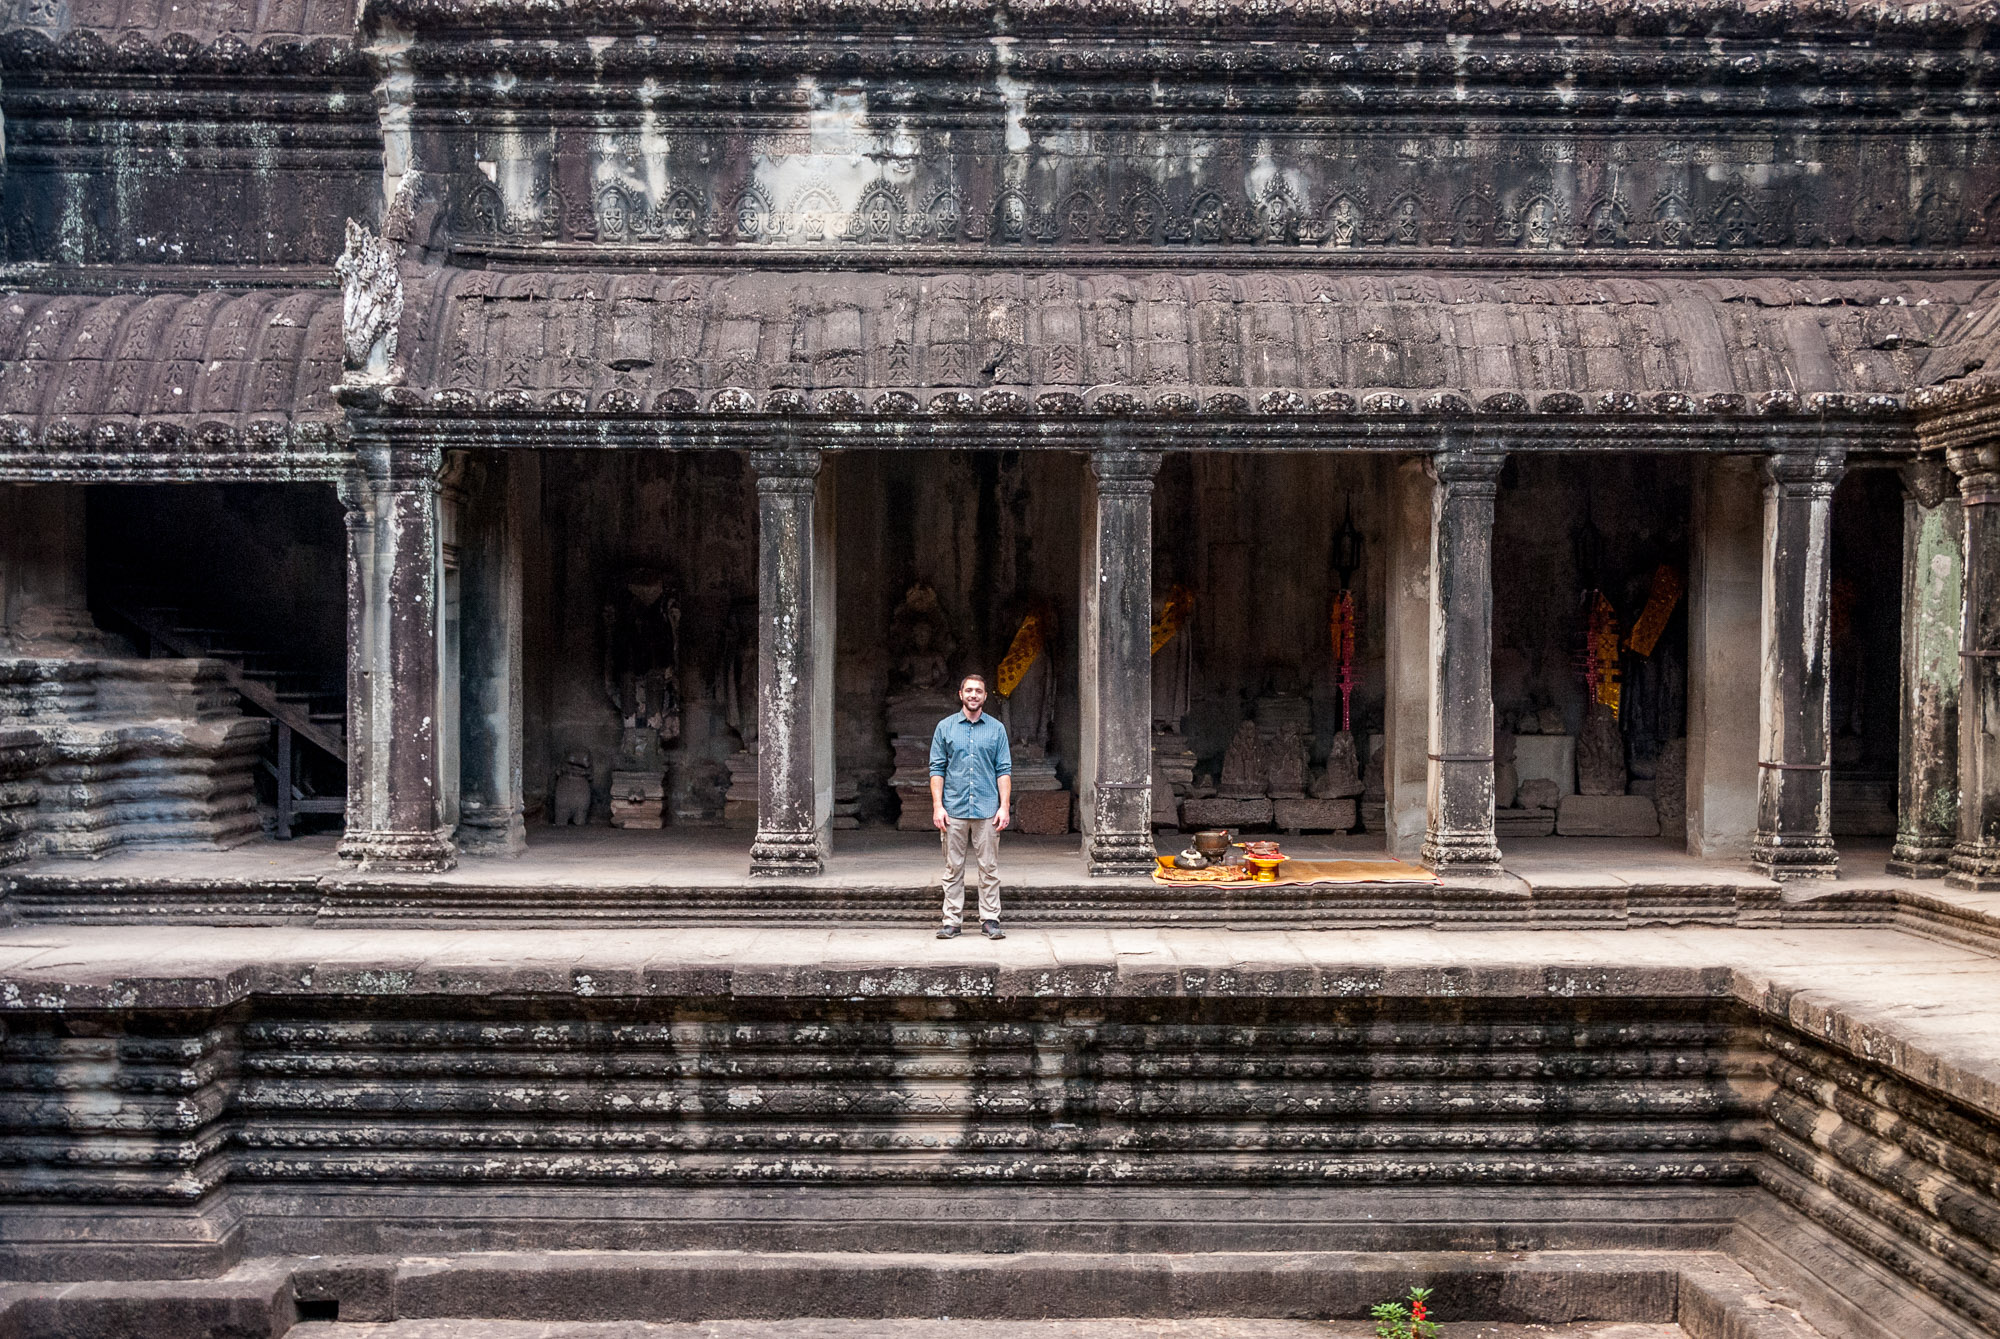 Dan inside Angkor Wat